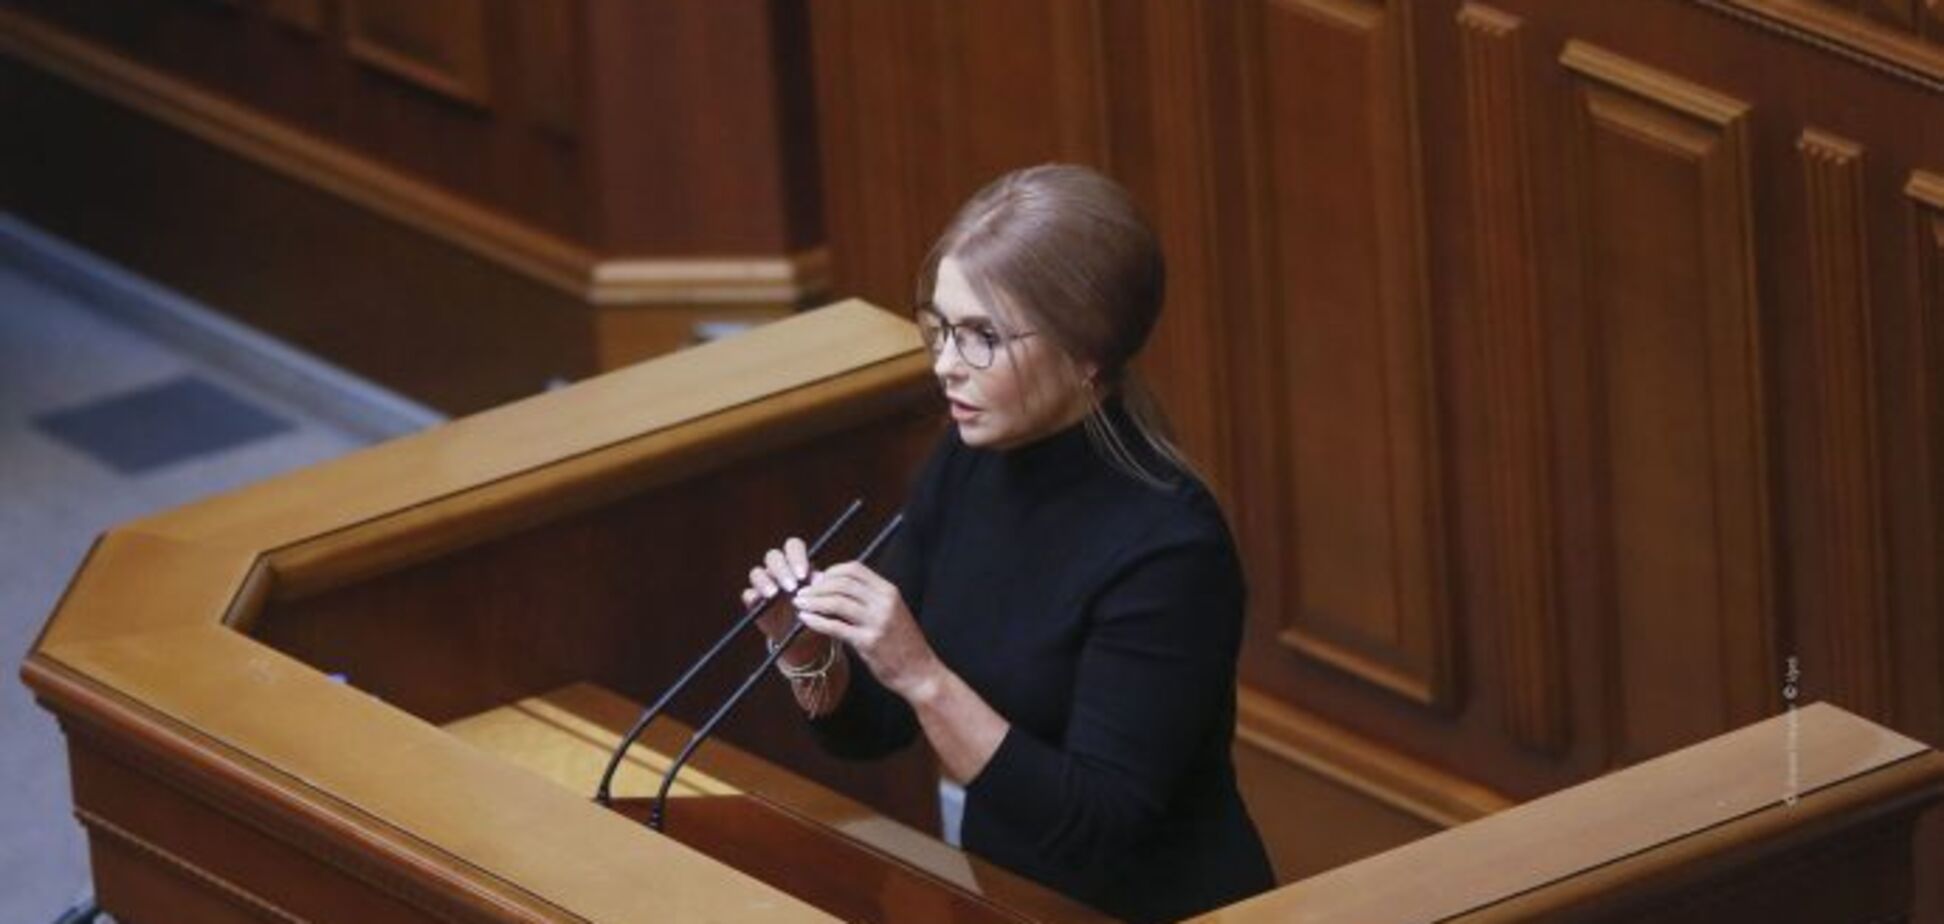 Юлія Тимошенко